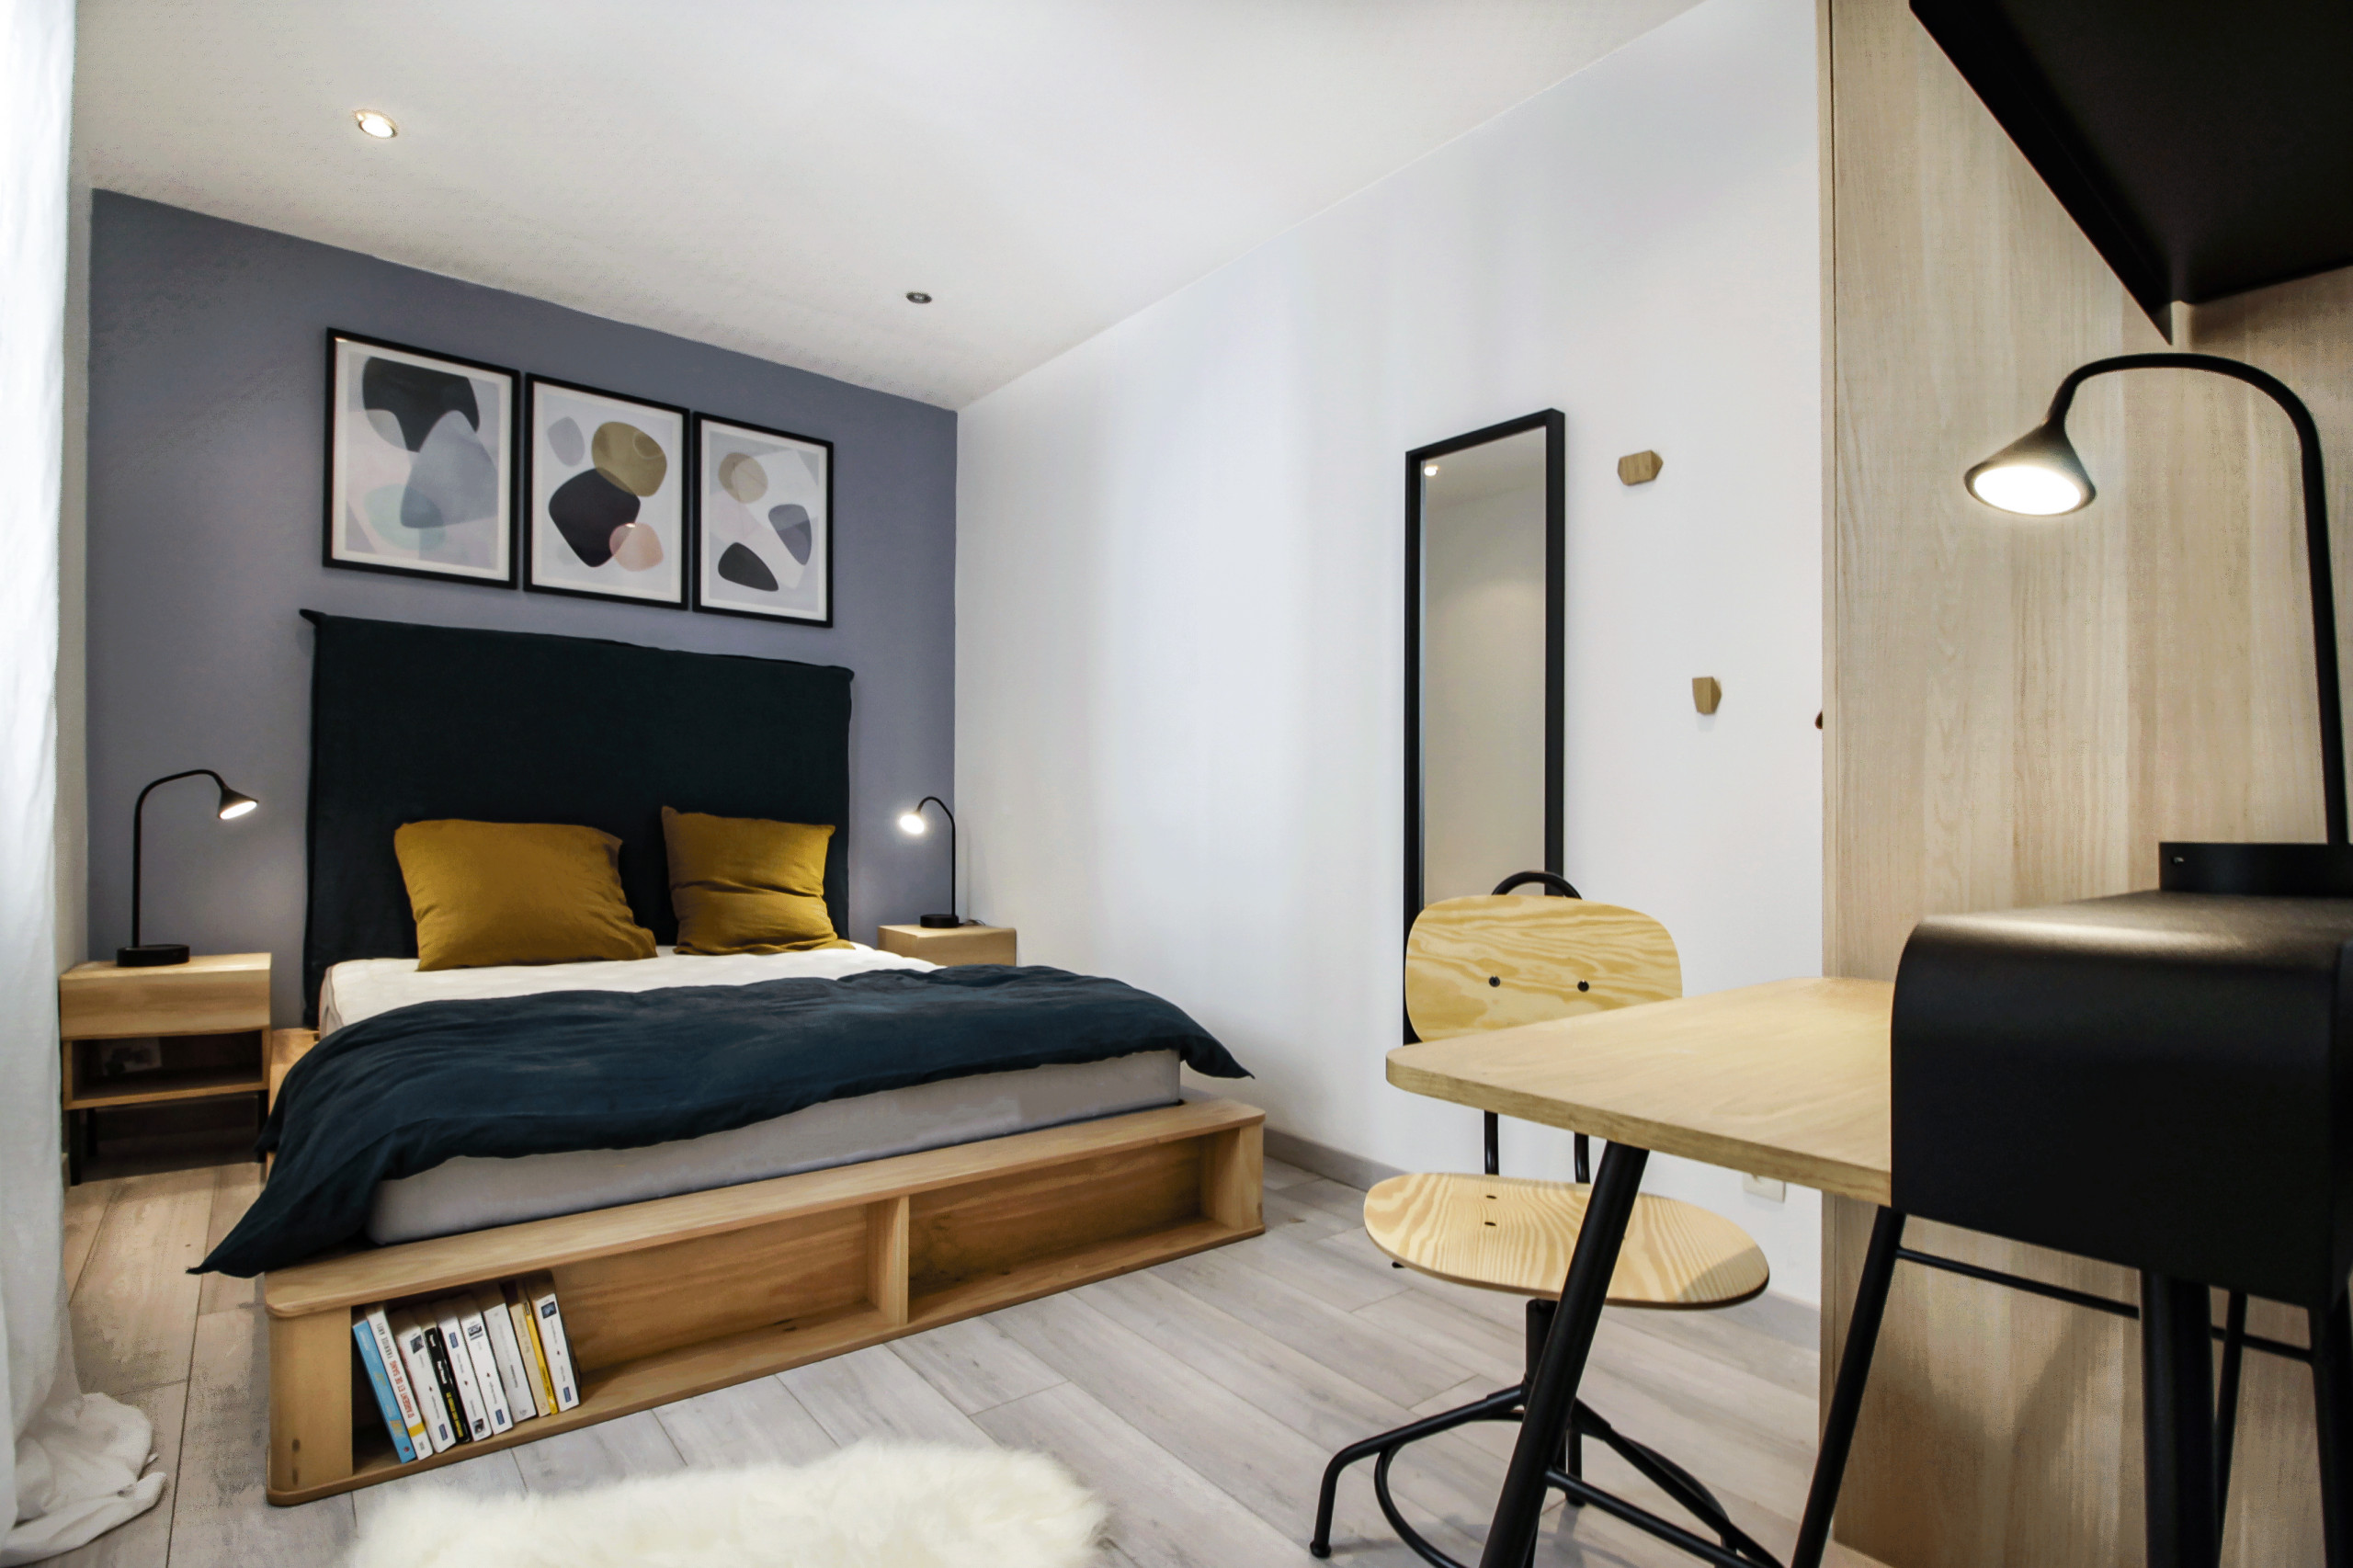 Rénovation d'un appartement pour un projet Airbnb